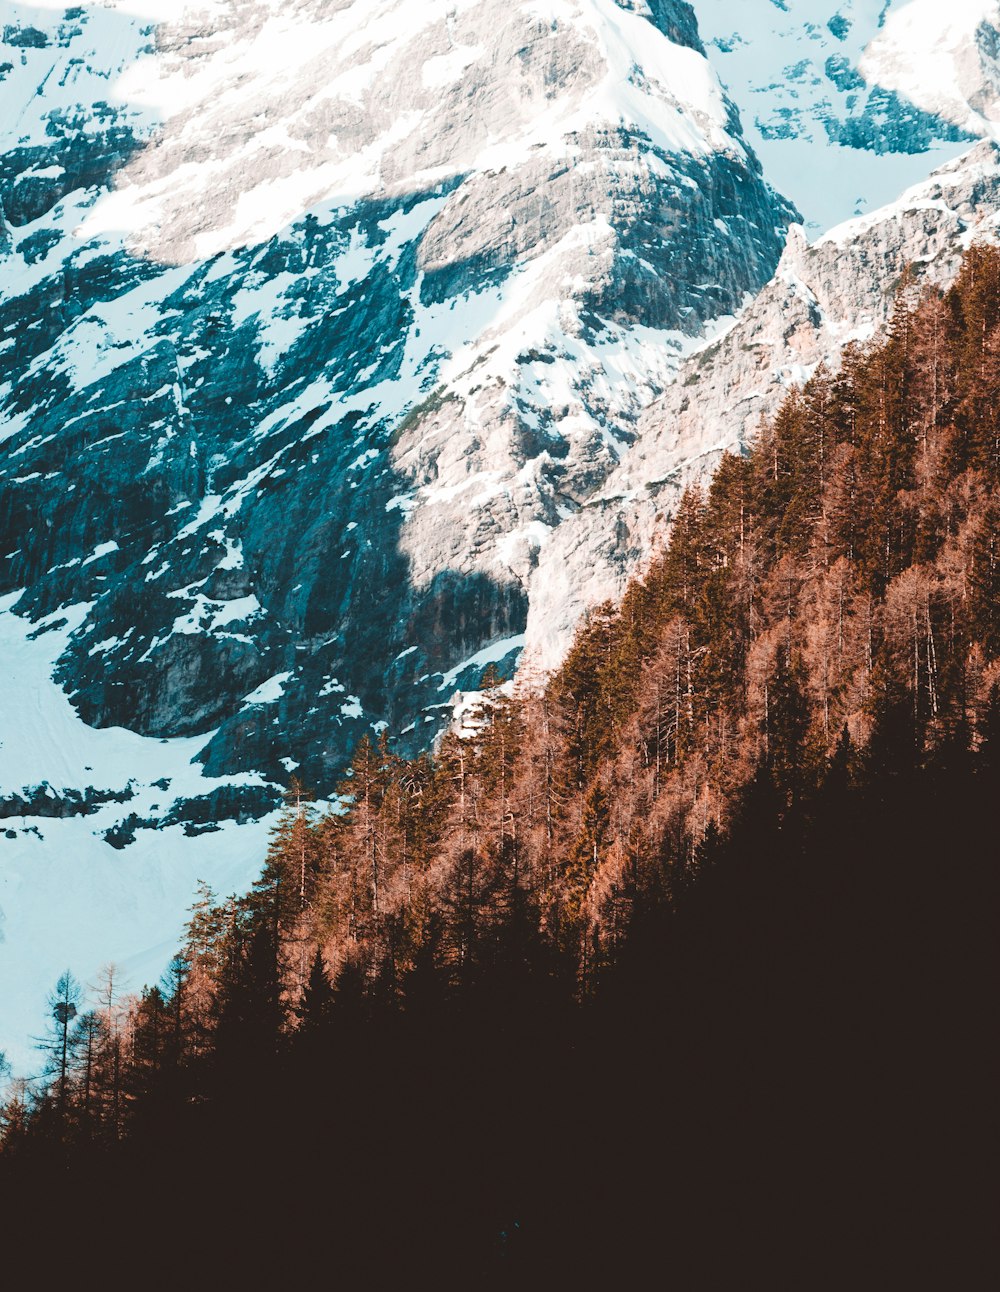 Bäume am verschneiten Berghang